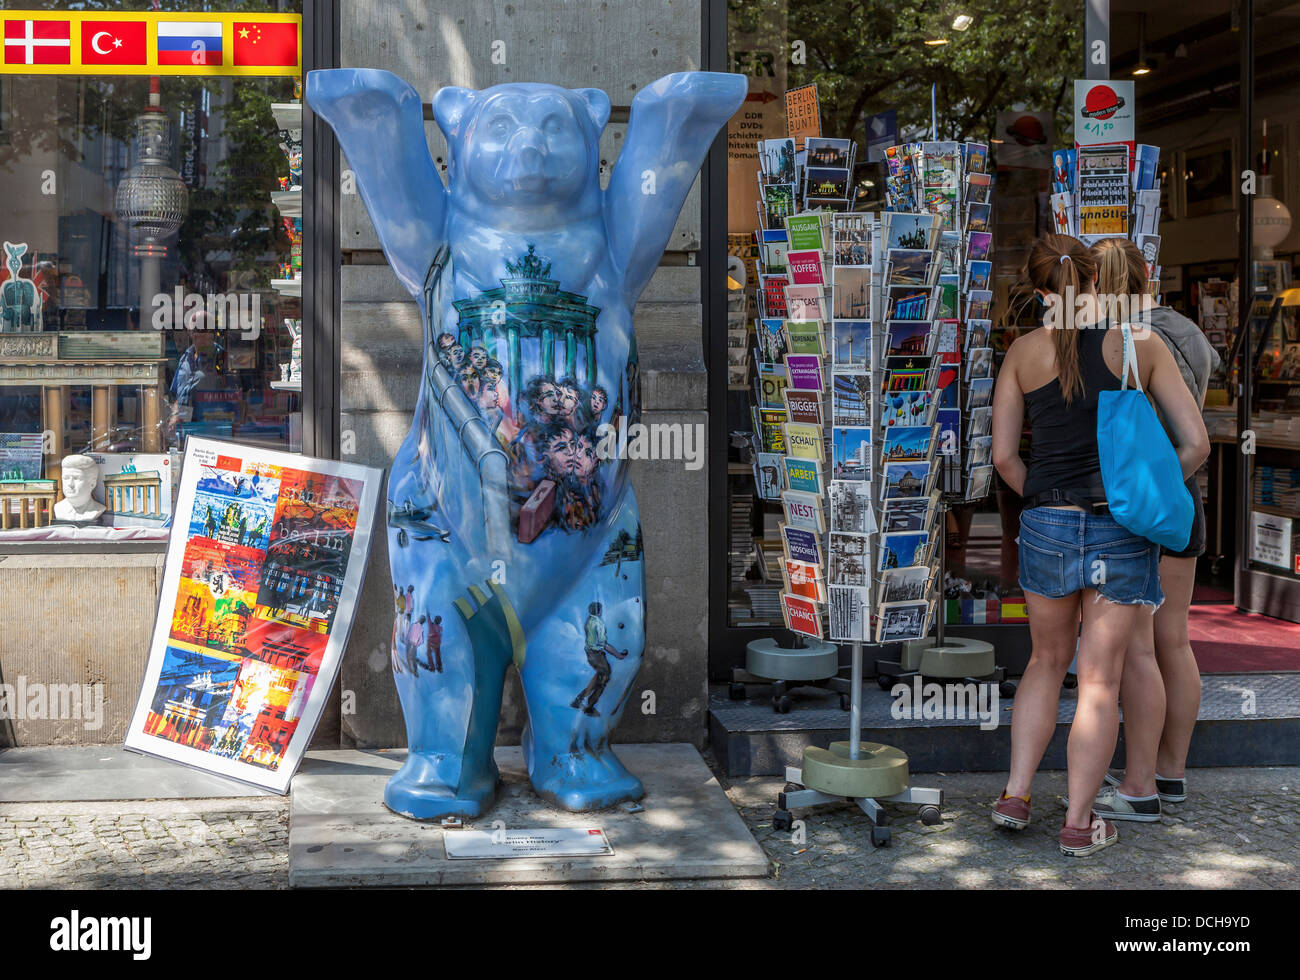 Blu orso di Berlino con vista di Berlino-vedendo mette in evidenza di fronte a un negozio di curiosita' in Unter den Linden, Berlino Foto Stock